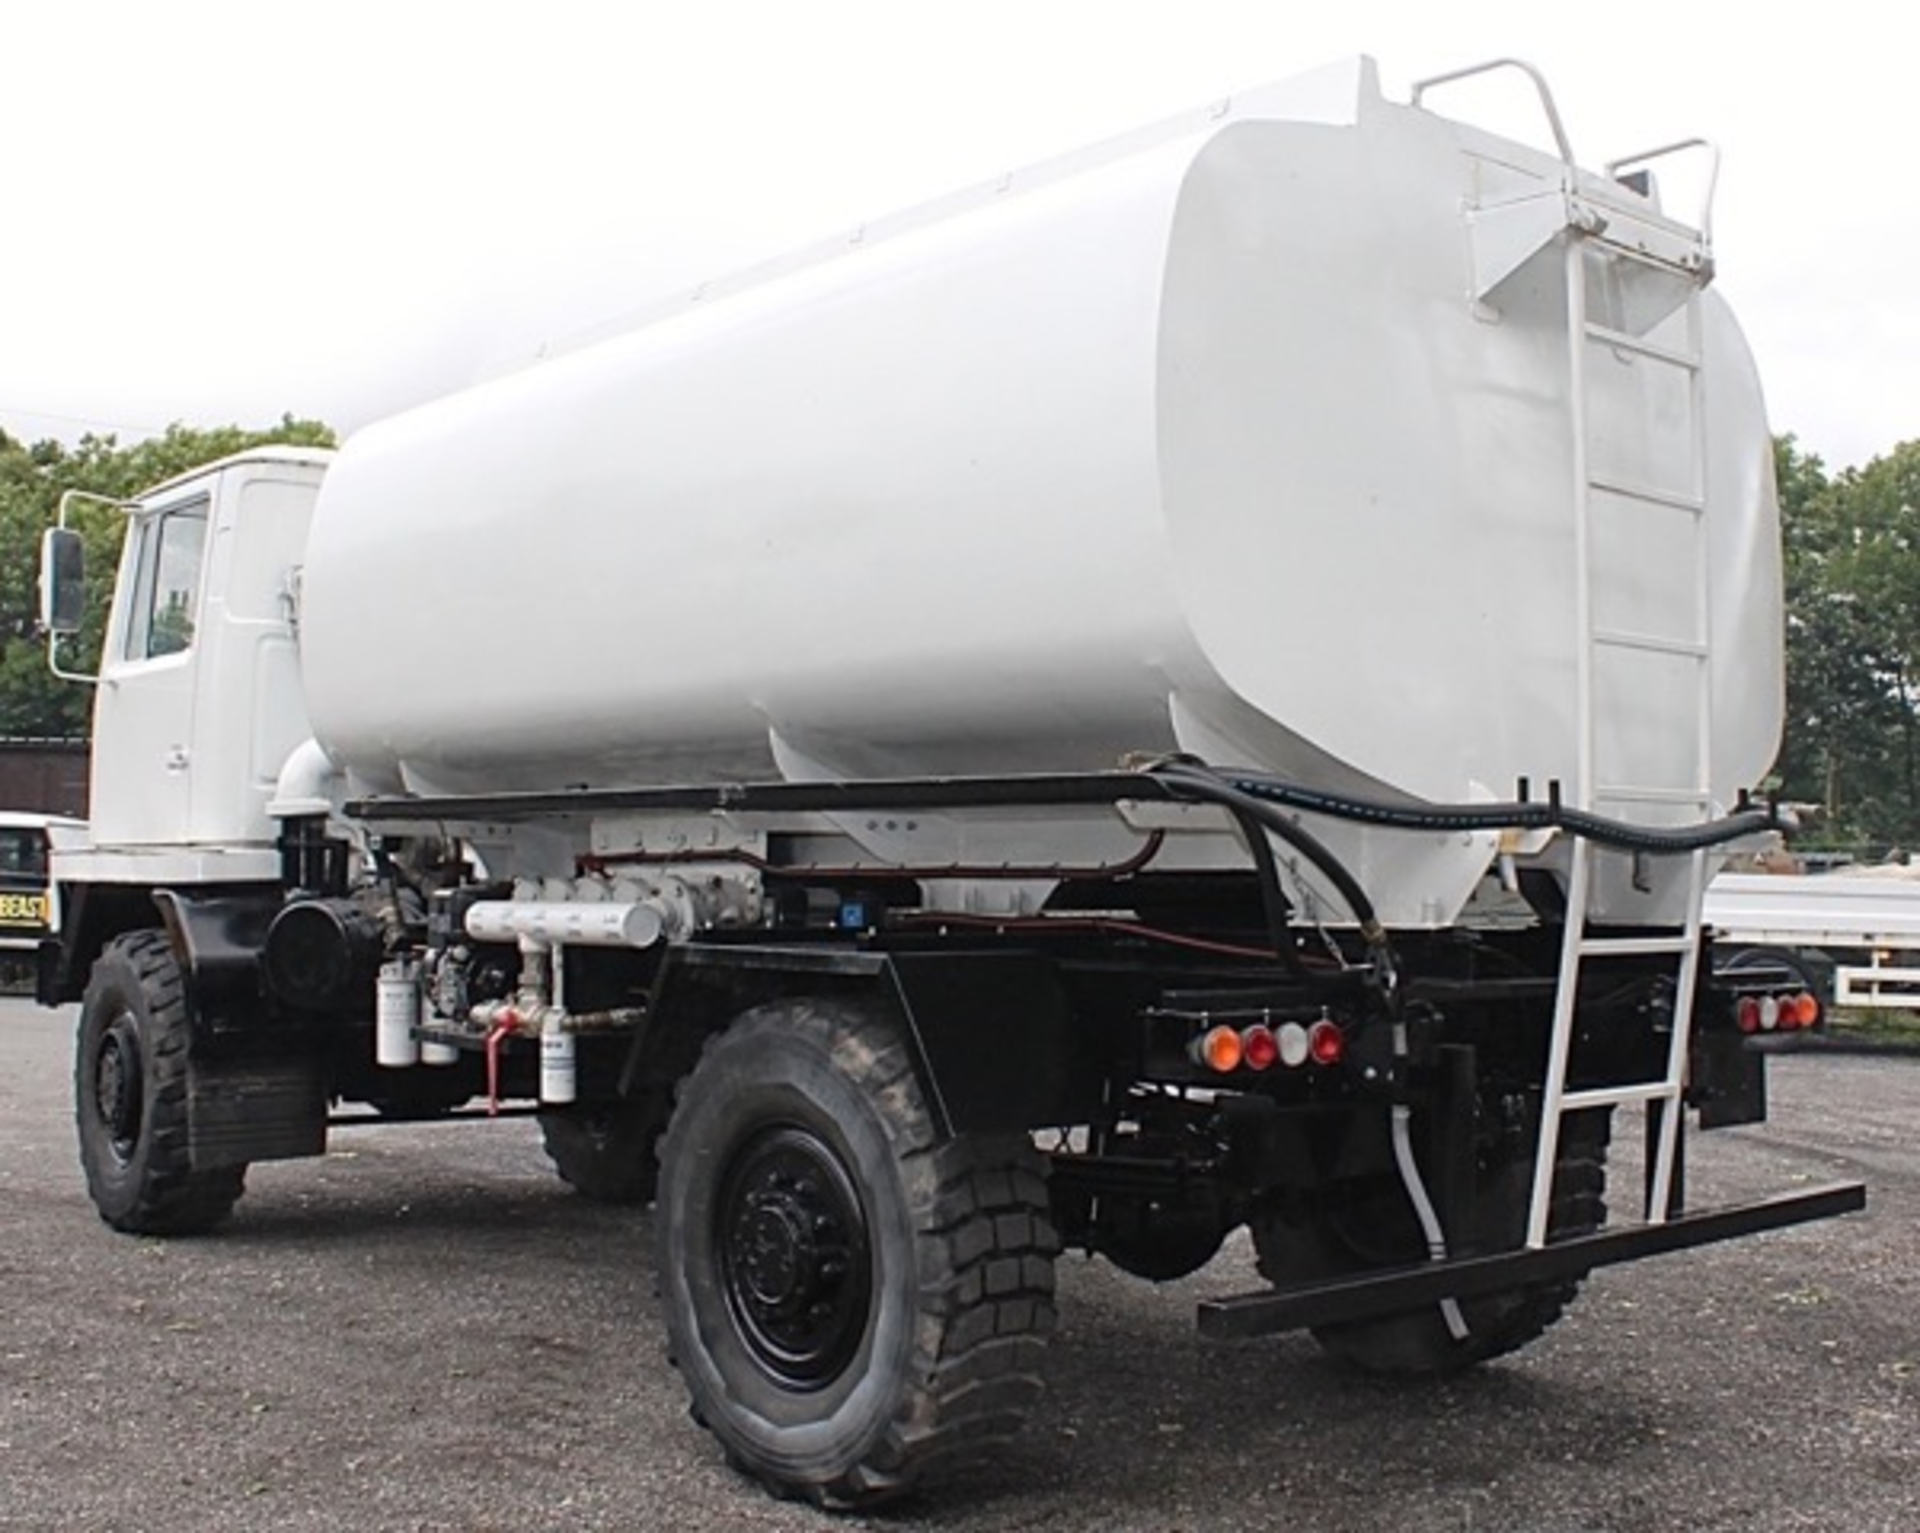 Bedford TM 12,000 litre fuel tanker
VIN: 101530
c/w MOD form 654 for registration
SKU 1486 - Image 4 of 11